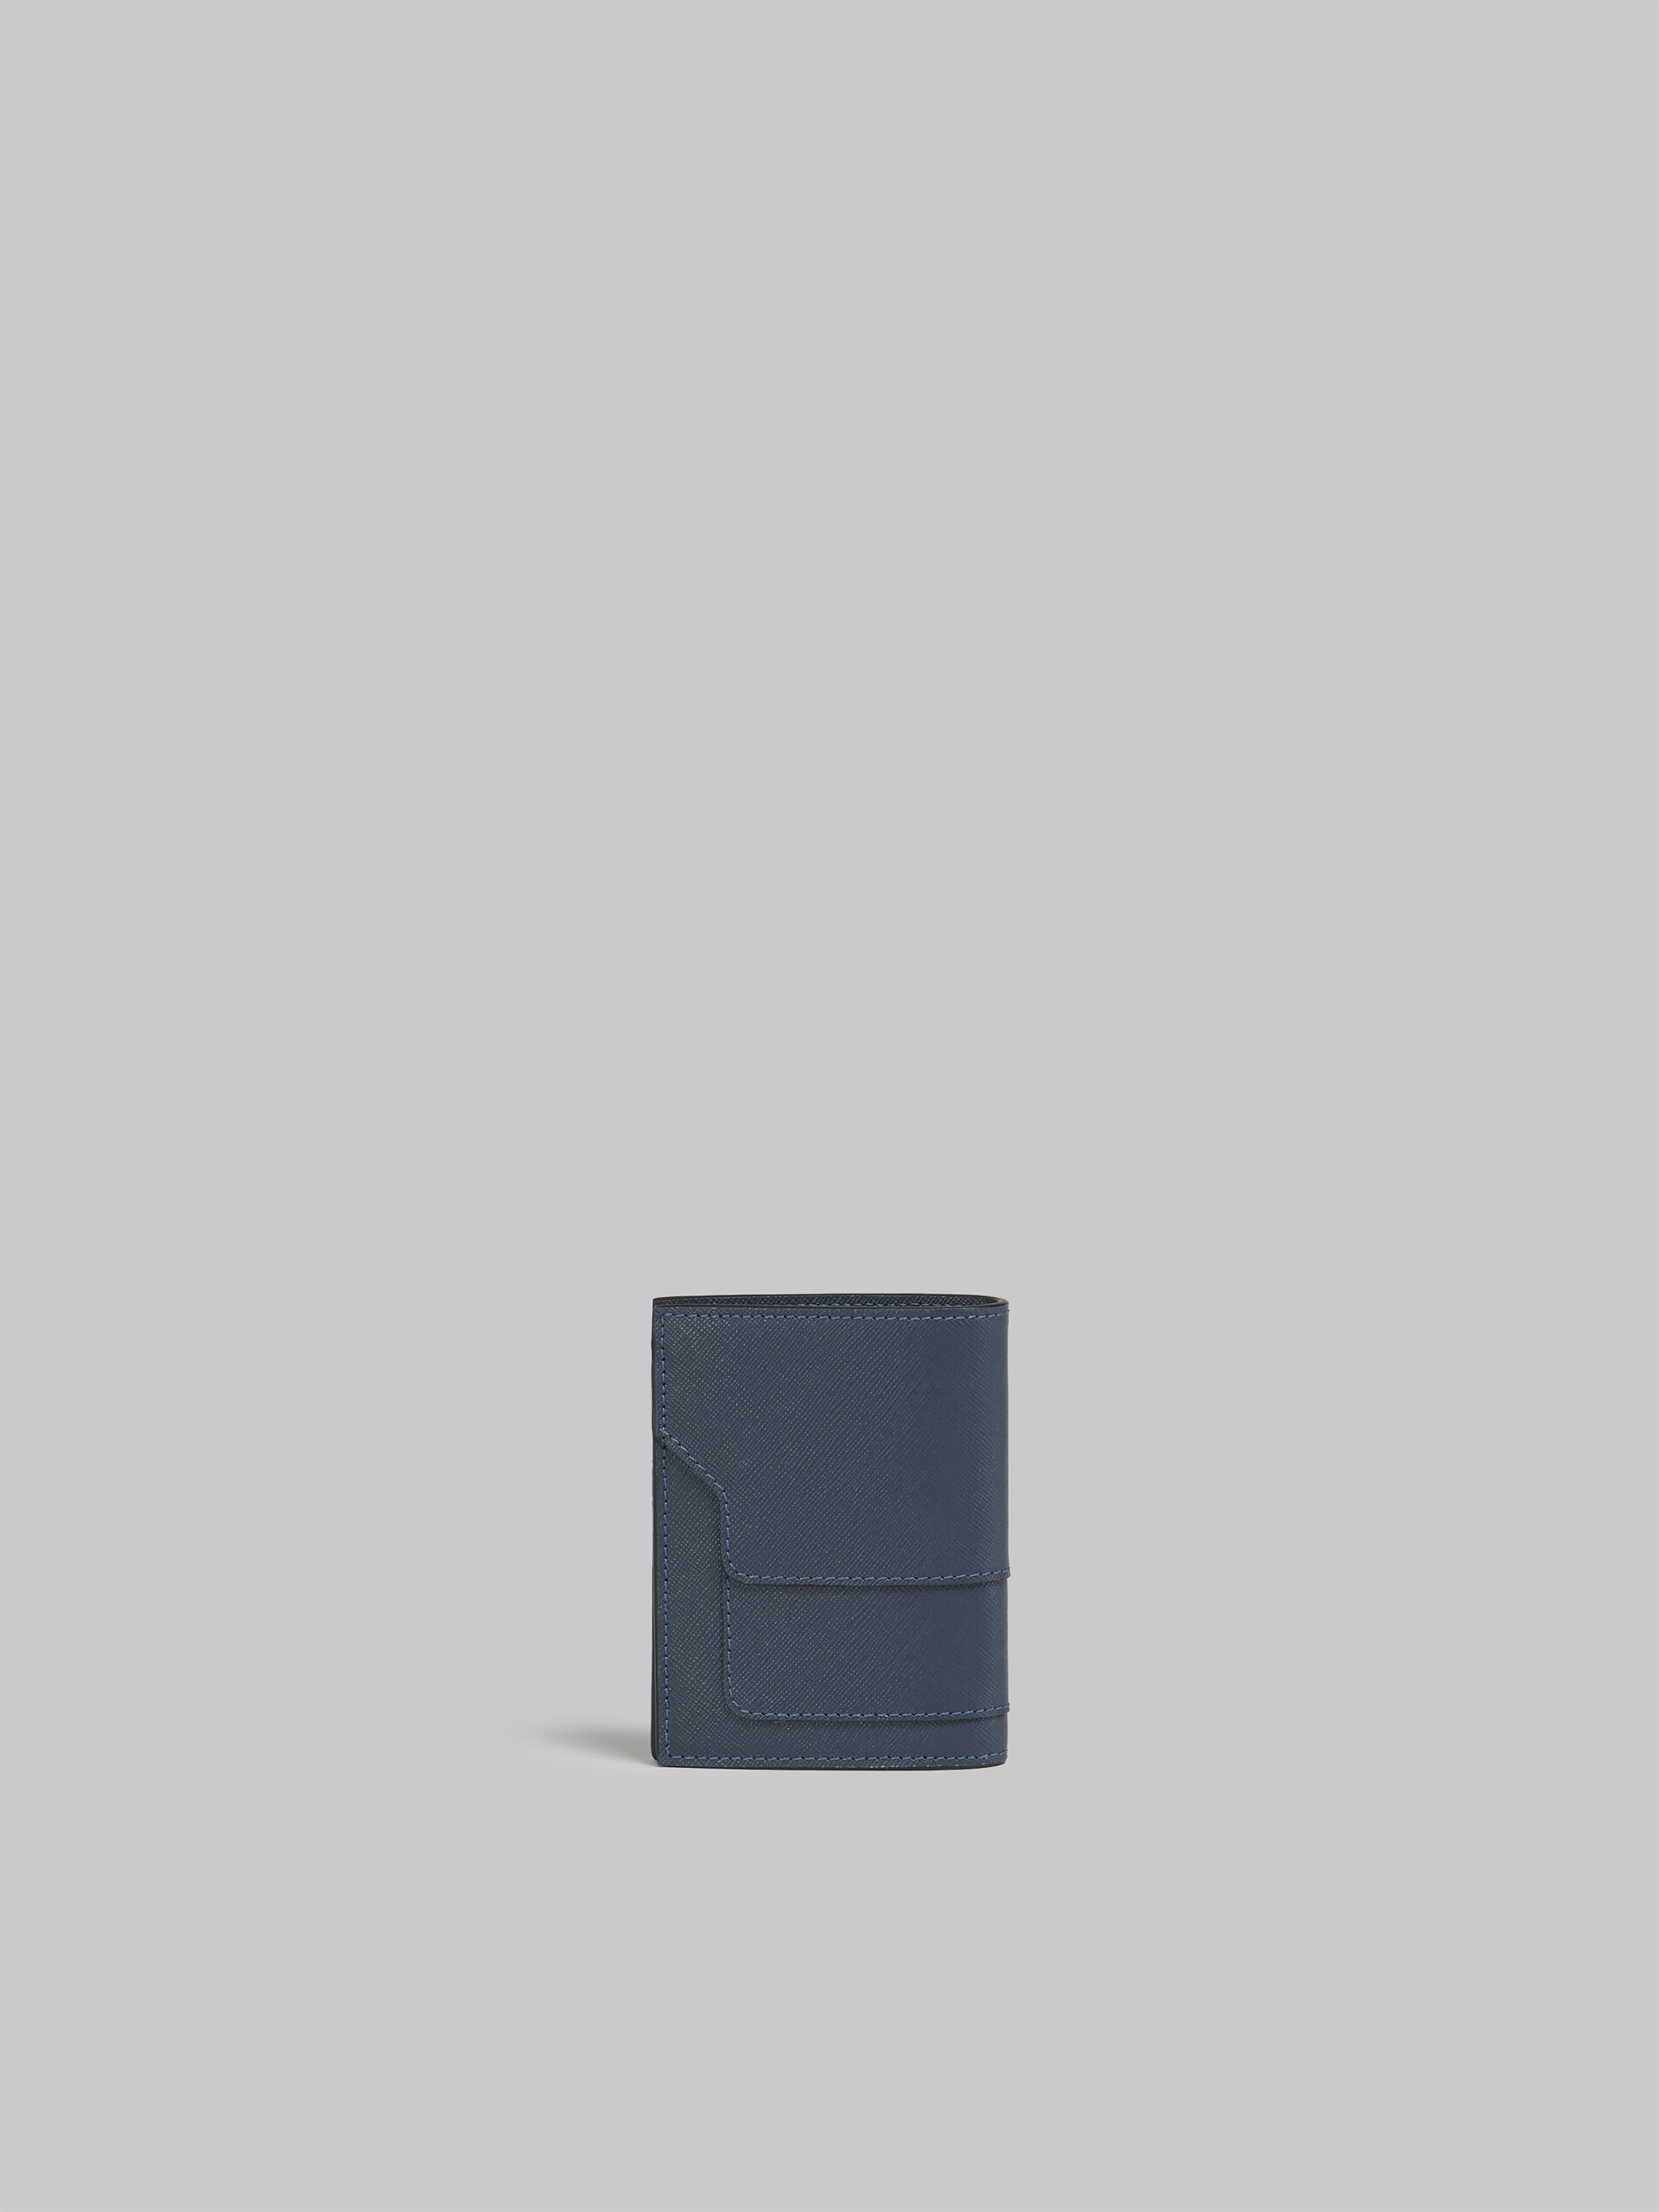 Portafoglio bi-fold in saffiano blu - Portafogli - Image 3